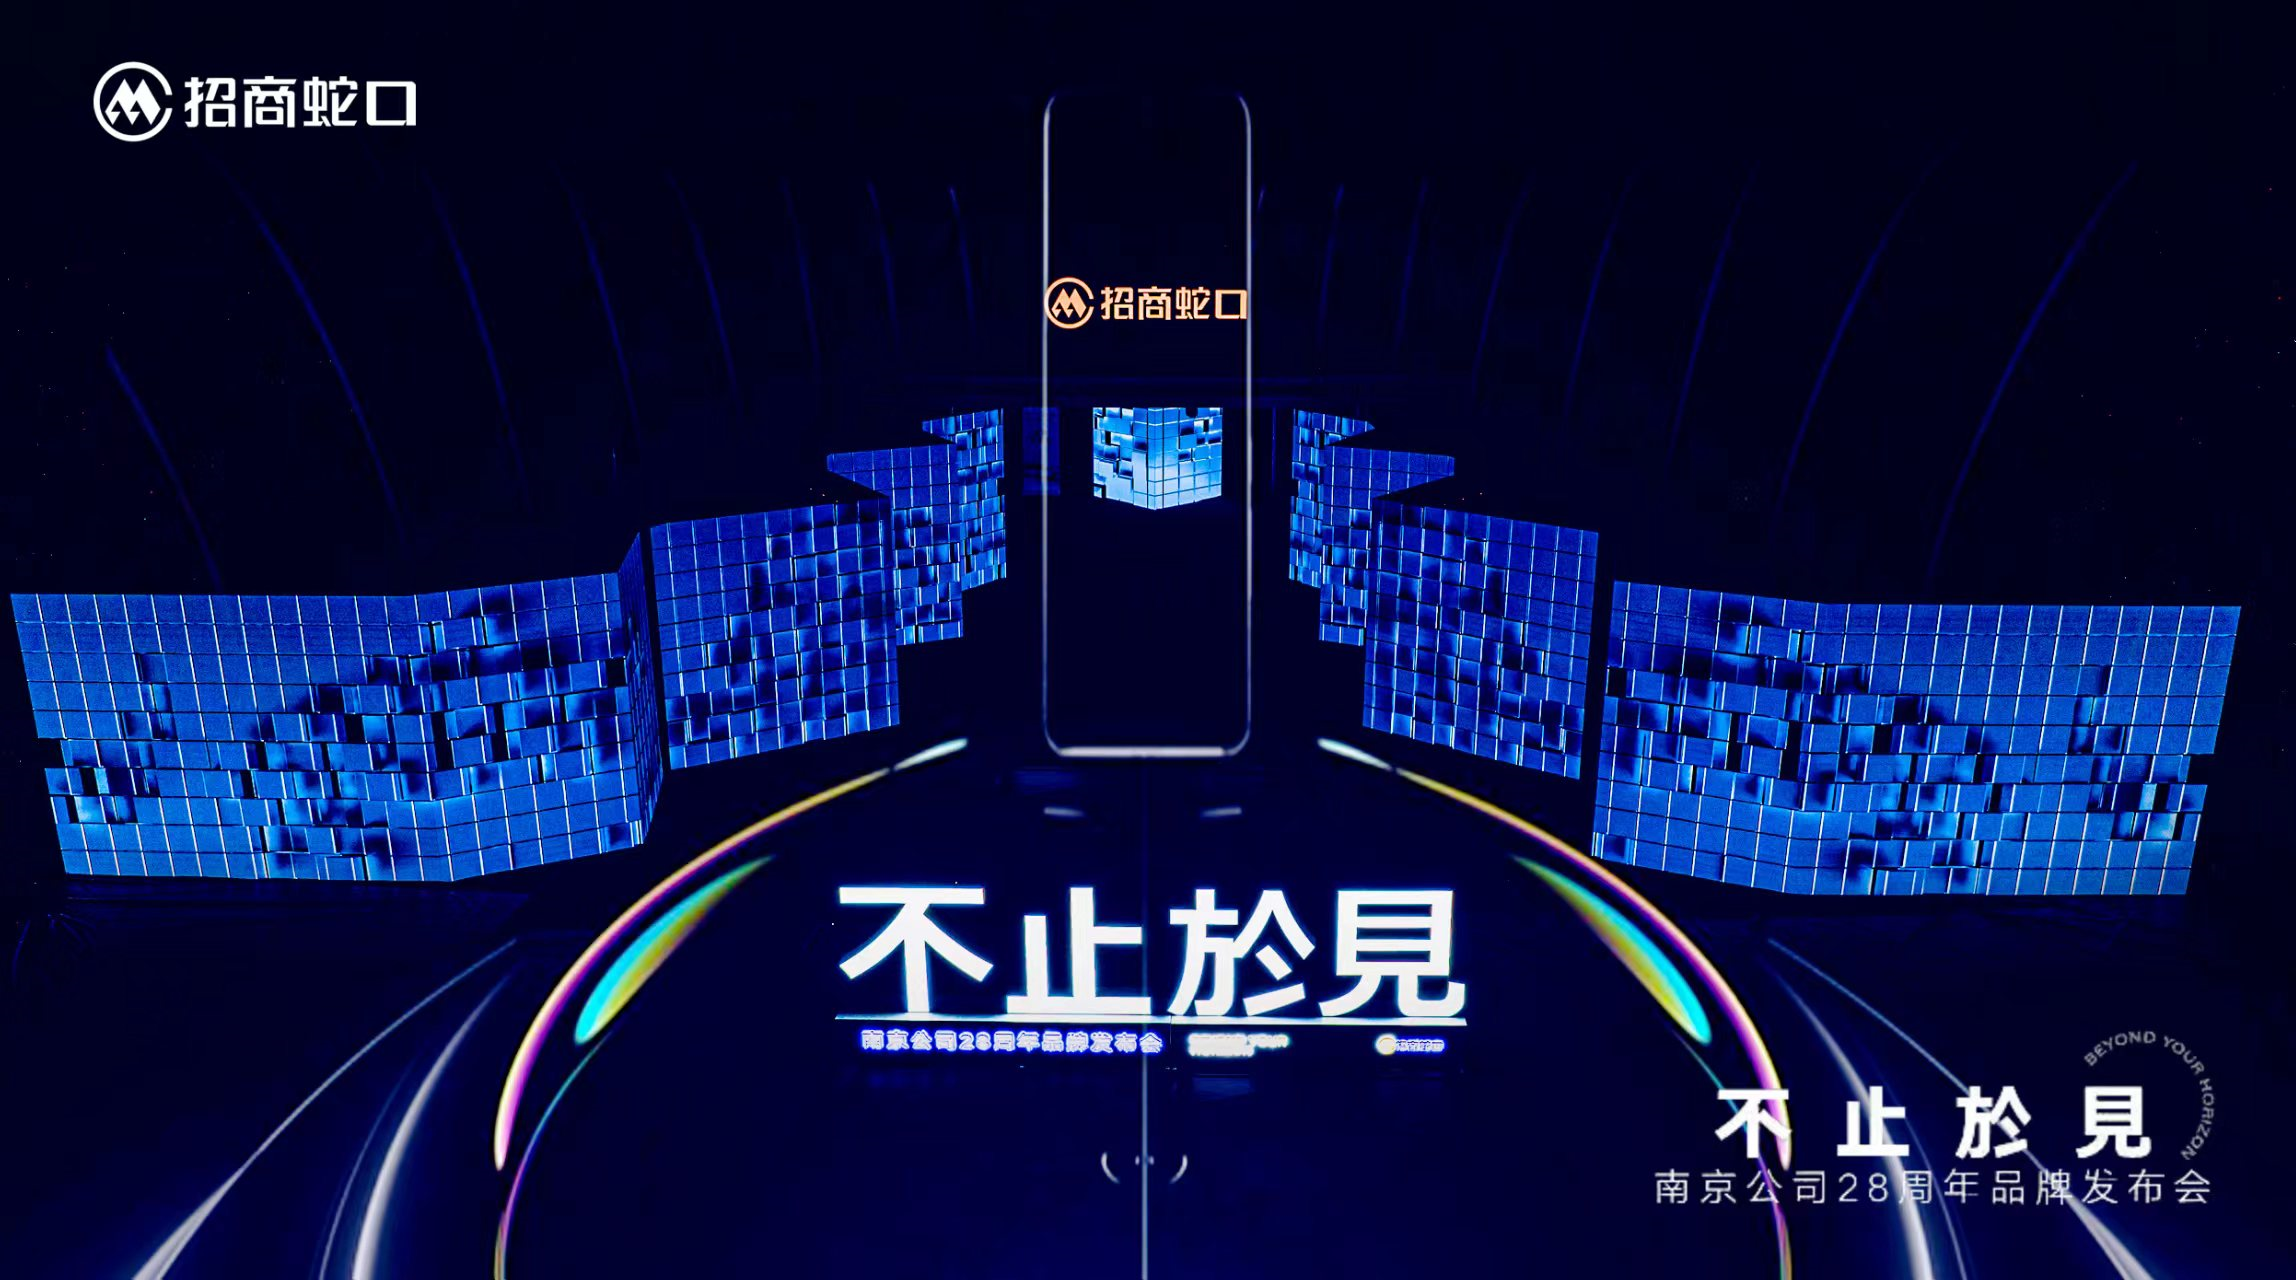 不止于见｜南京公司28周年发布会圆满落幕 共见一场影响南京的盛会